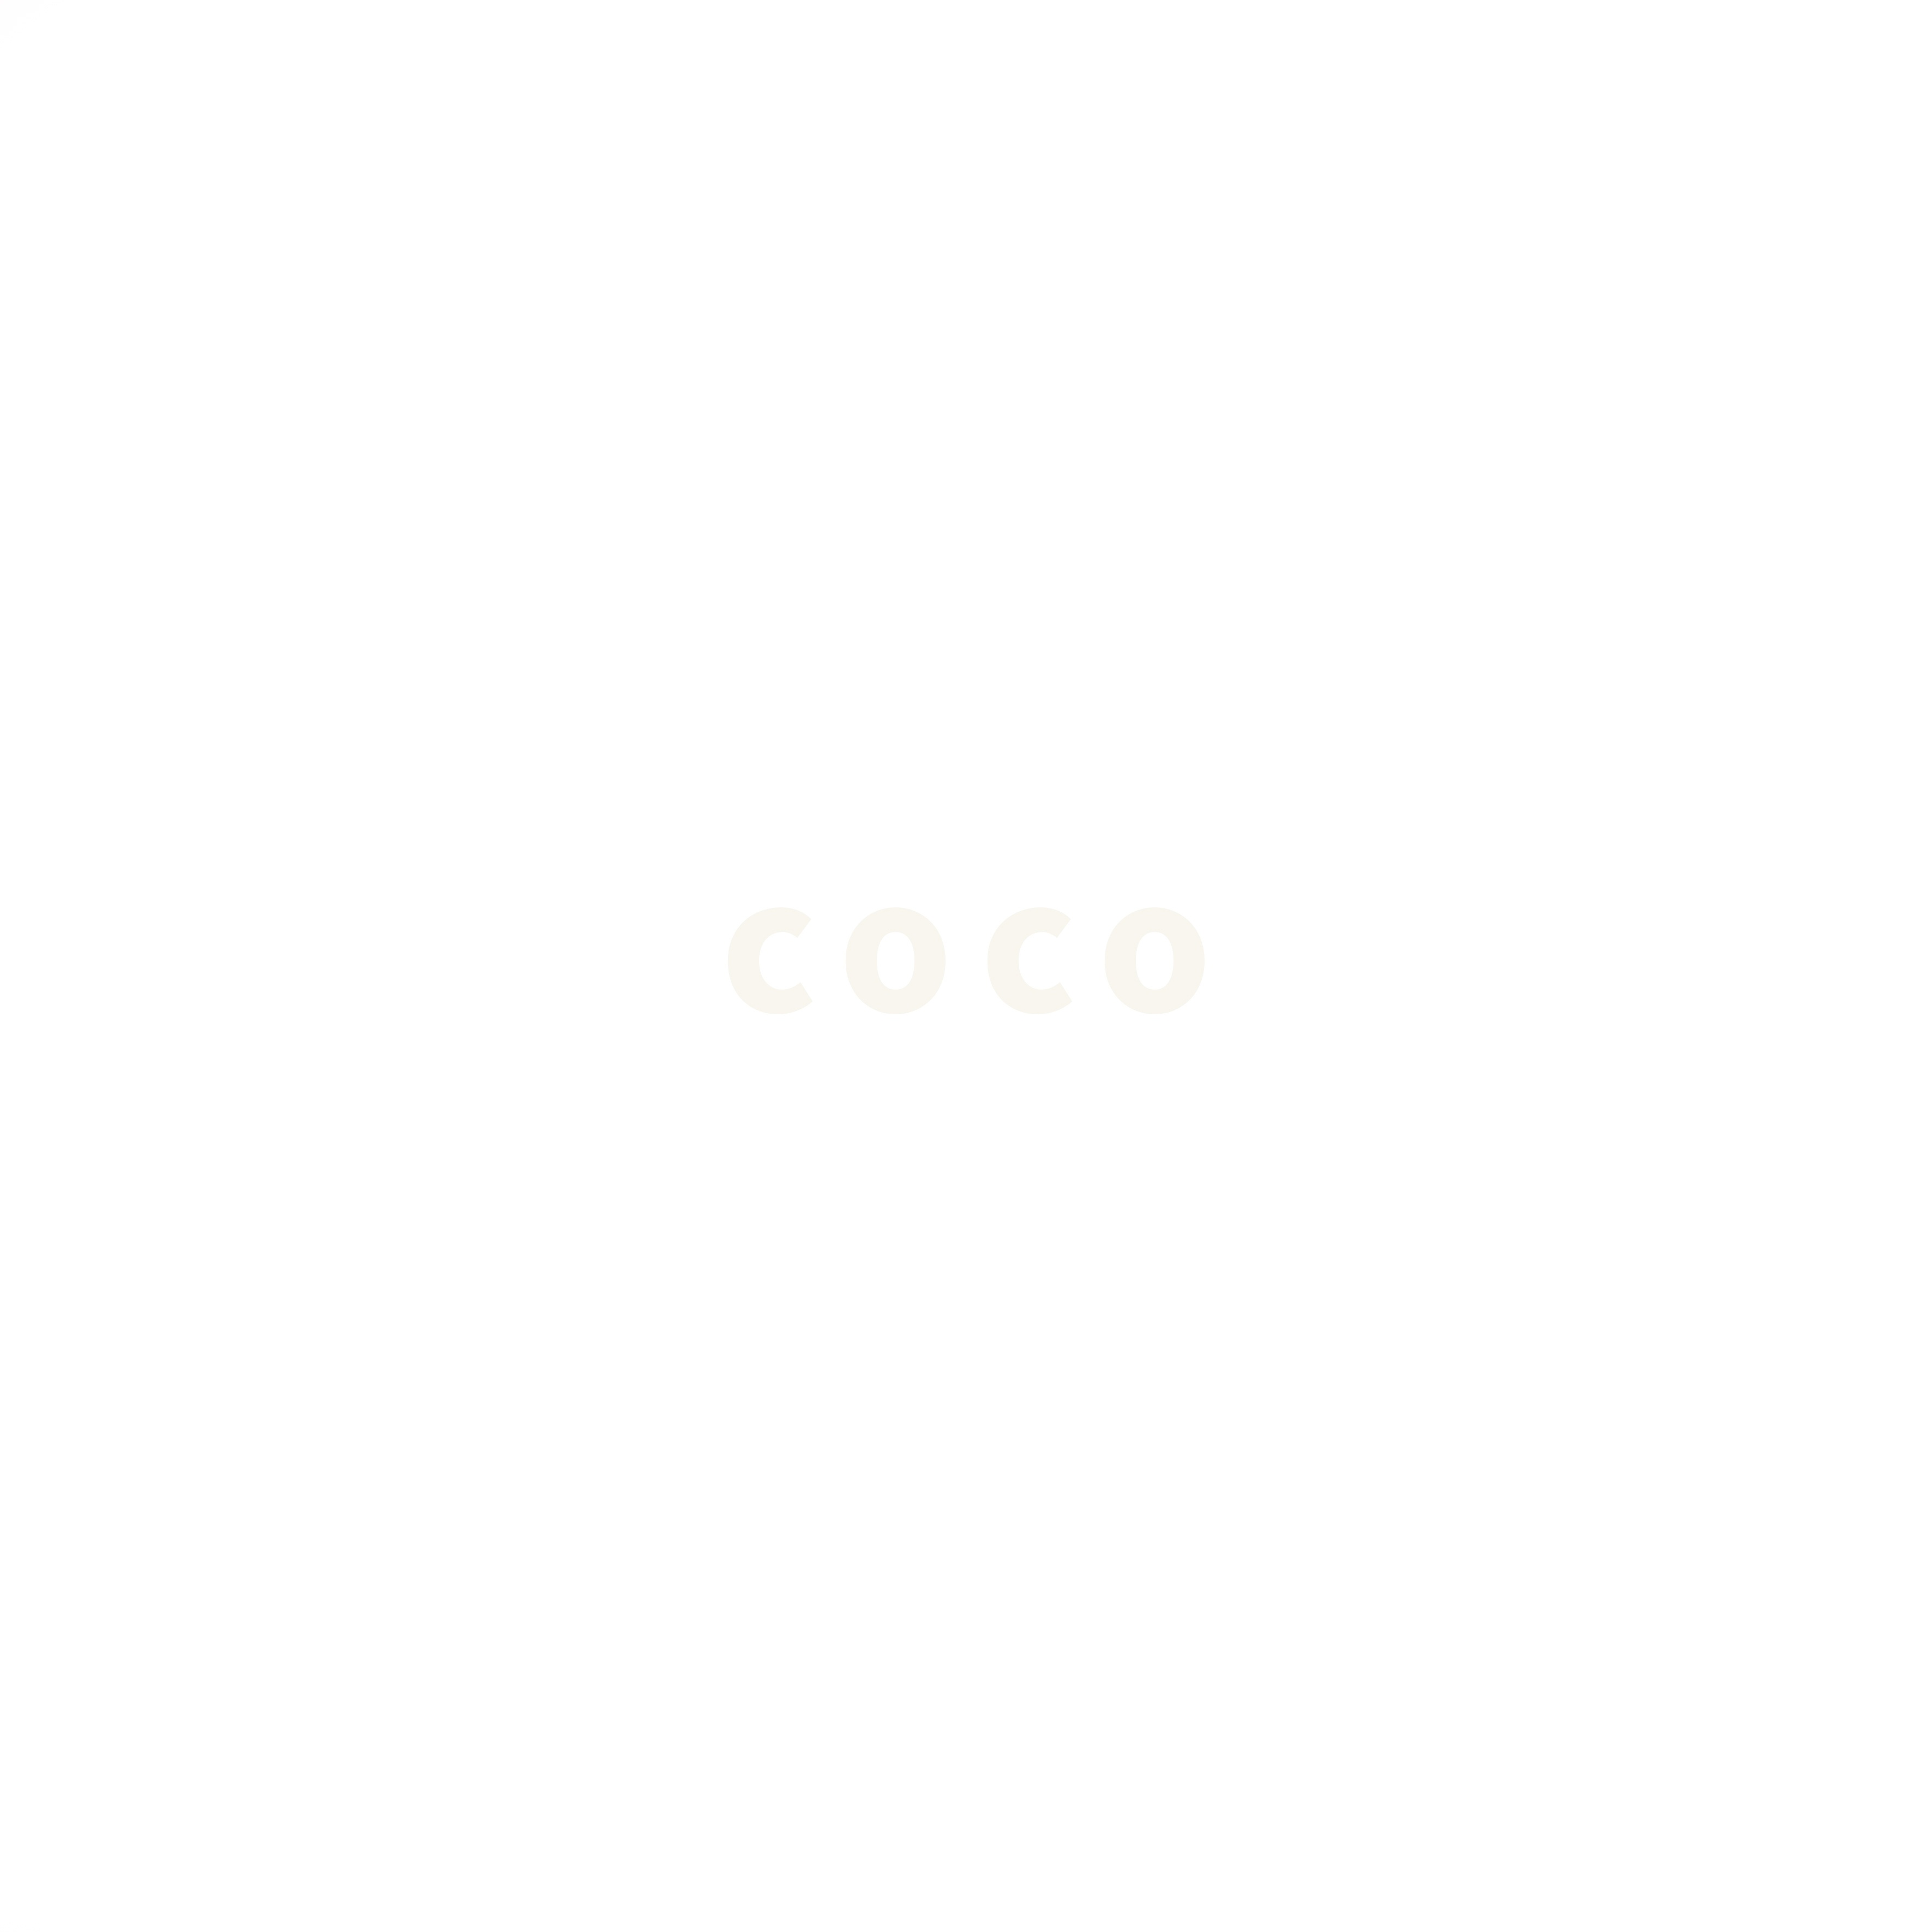 CoCo (San Holo Remix)